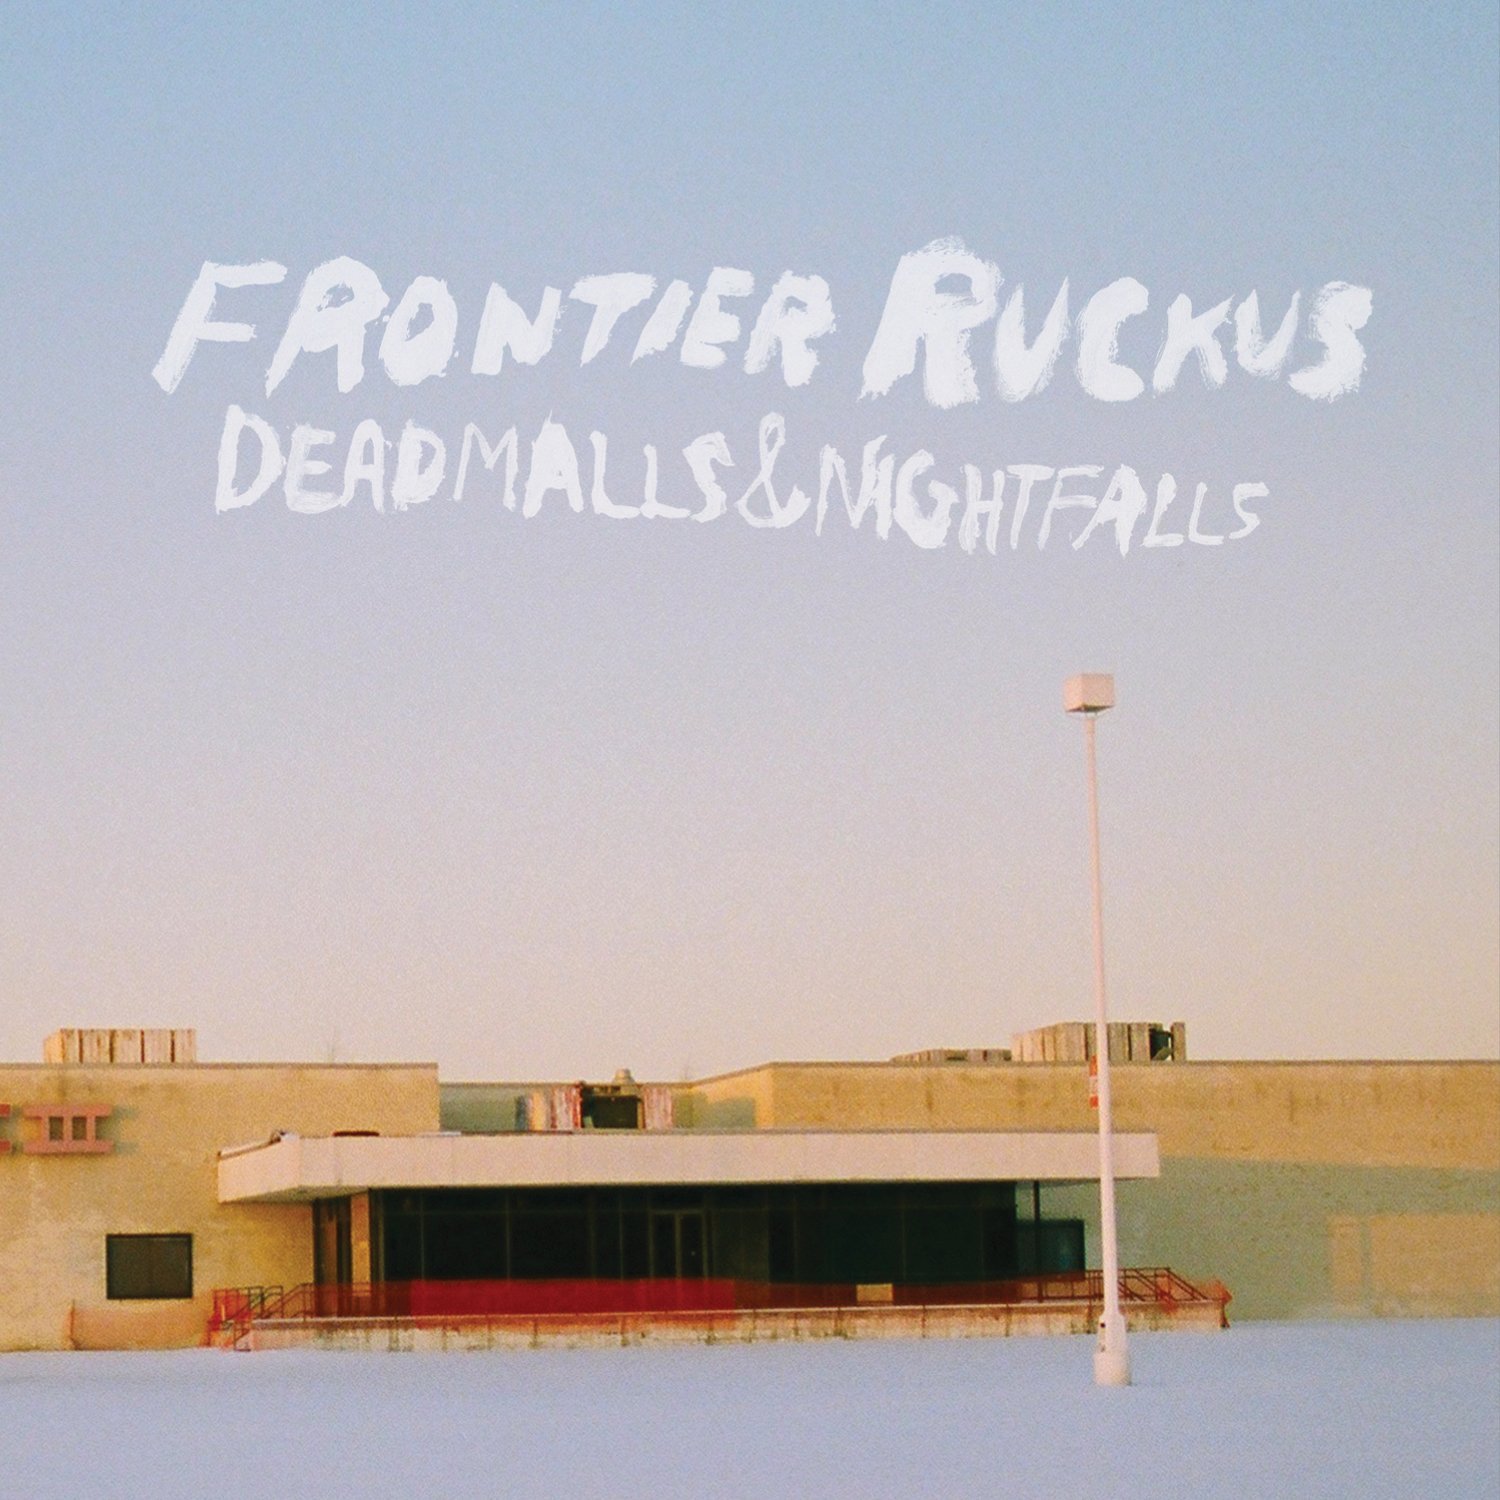 Deadmalls and Nightfalls (2010)